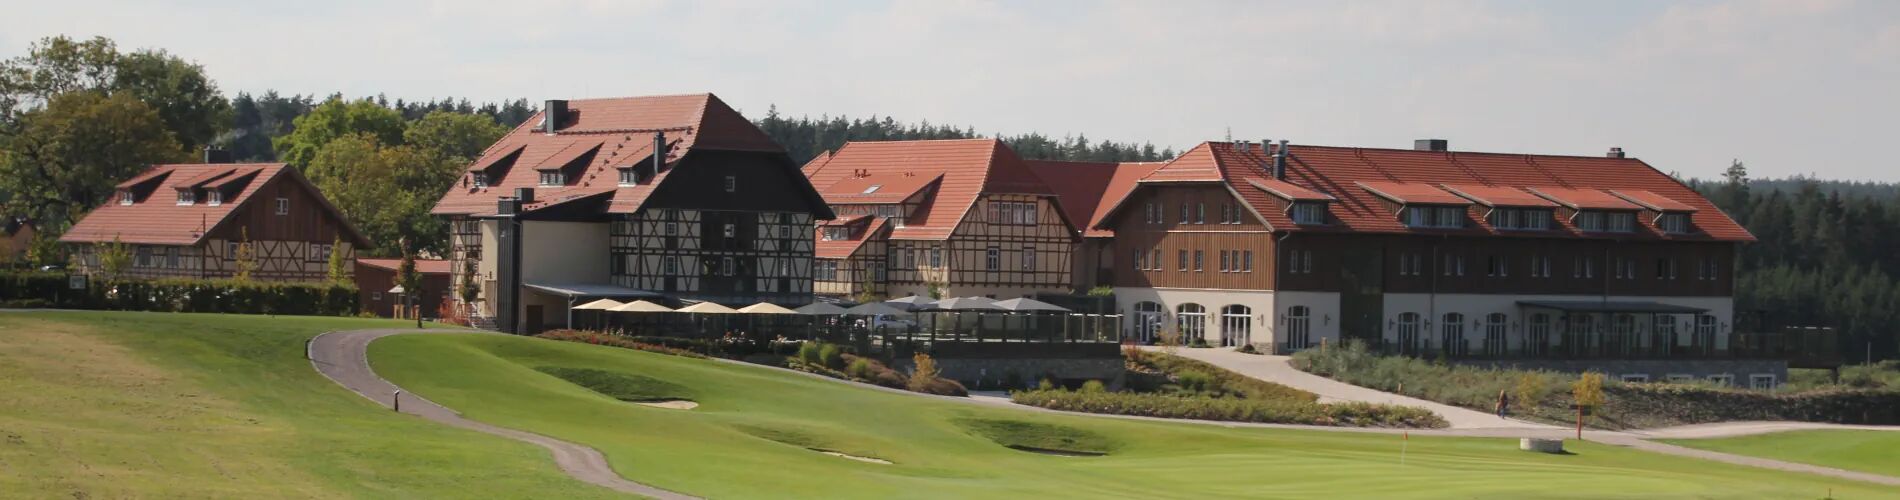 Panaromablick auf das Spa & Golfresort Weimarer Land mit Golfanlage im Vordergrund